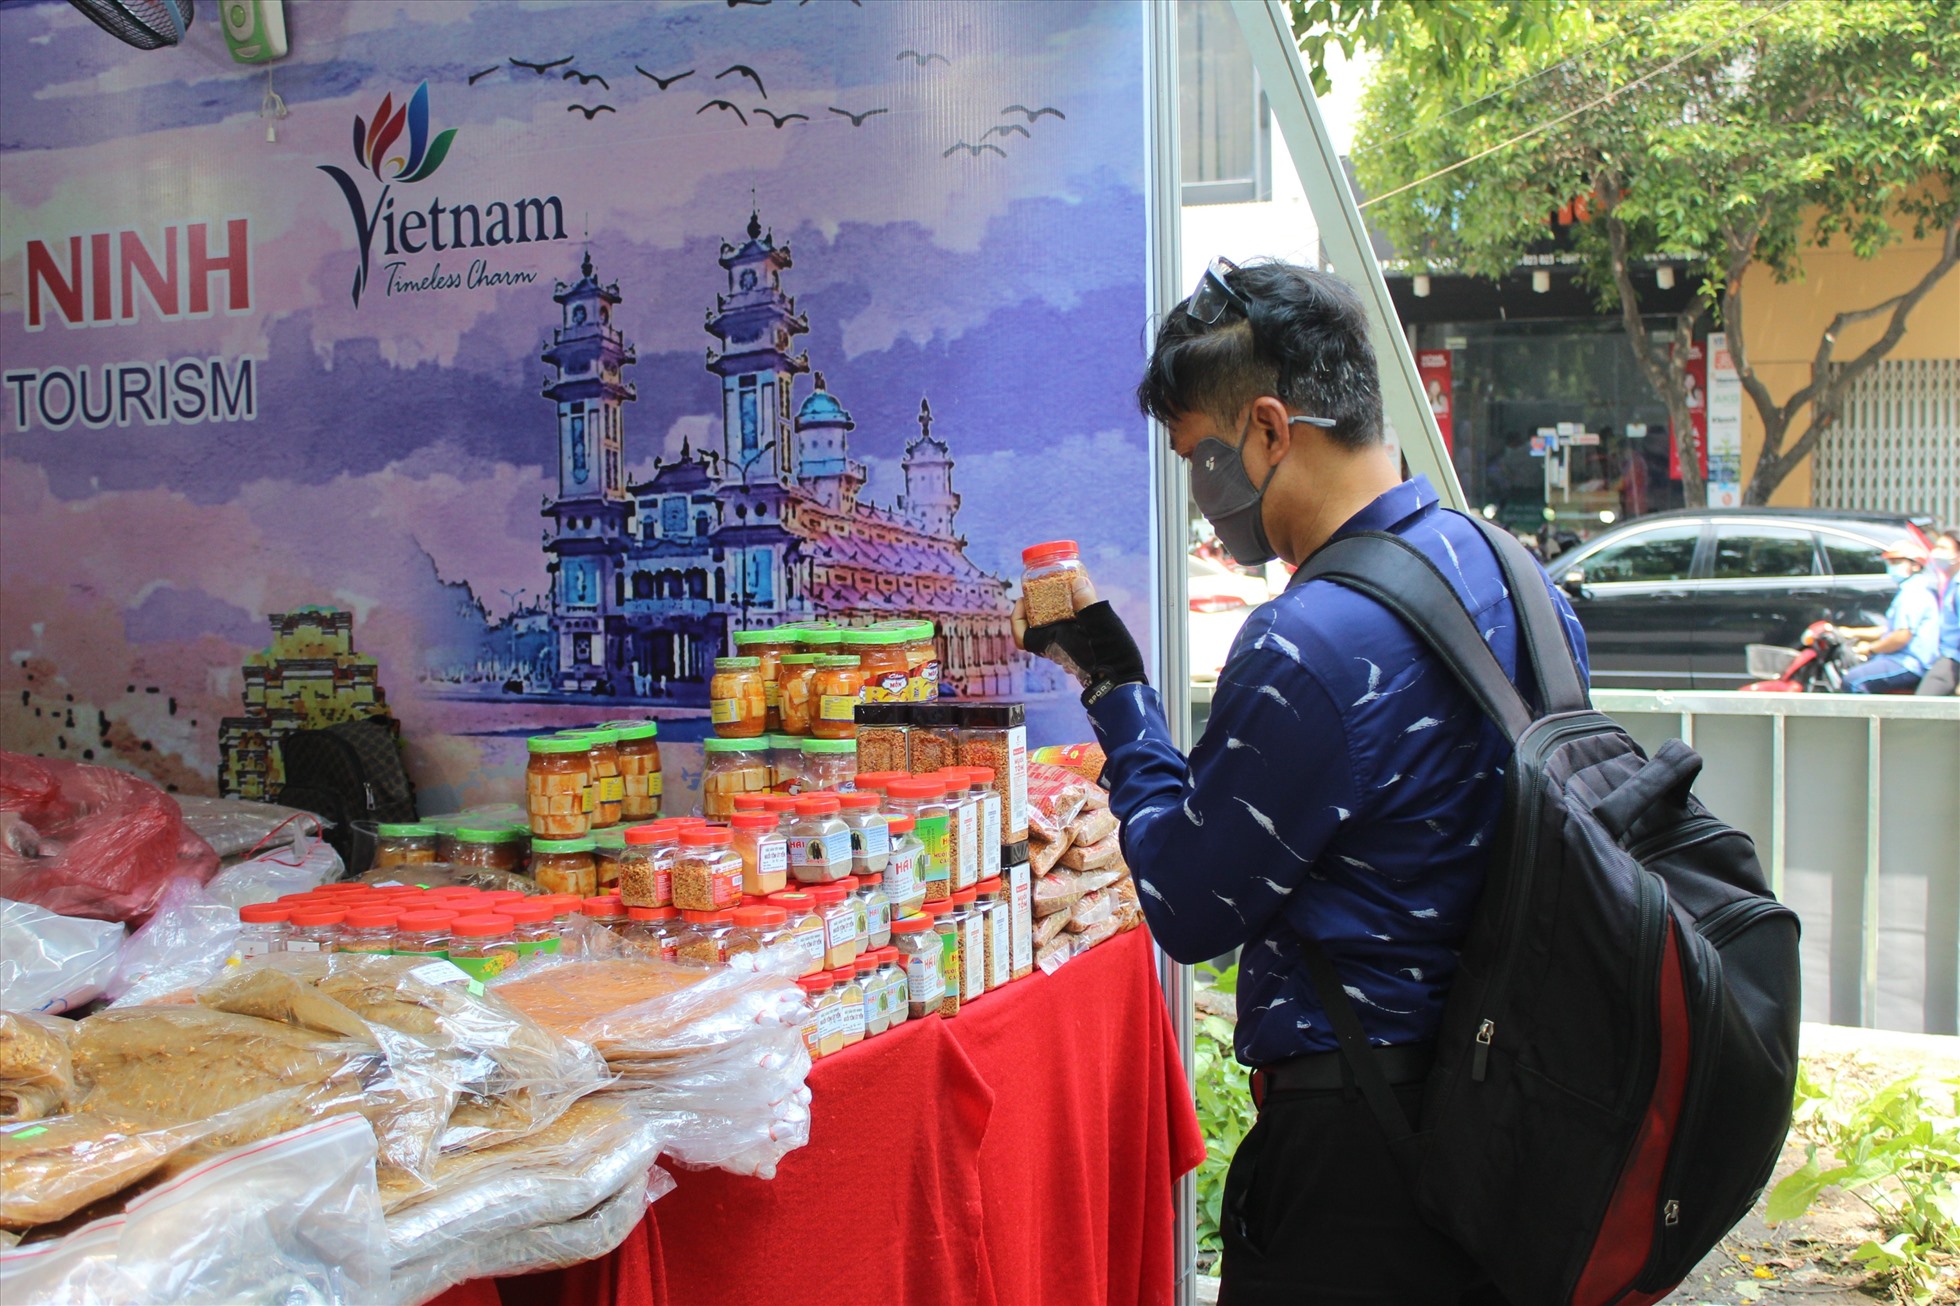 Đặc sản muối ớt Tây Ninh cũng góp mặt trong ngày hội du lịch TP Hồ Chí Minh năm nay. Ngoài ra, gian hàng cũng bày bán đa dạng các loại bánh tráng như bánh tráng trộn, bánh tráng phơi sương, bánh tráng bơ,... Nhiều du khách tỏ ra thích thú với những đặc sản này.